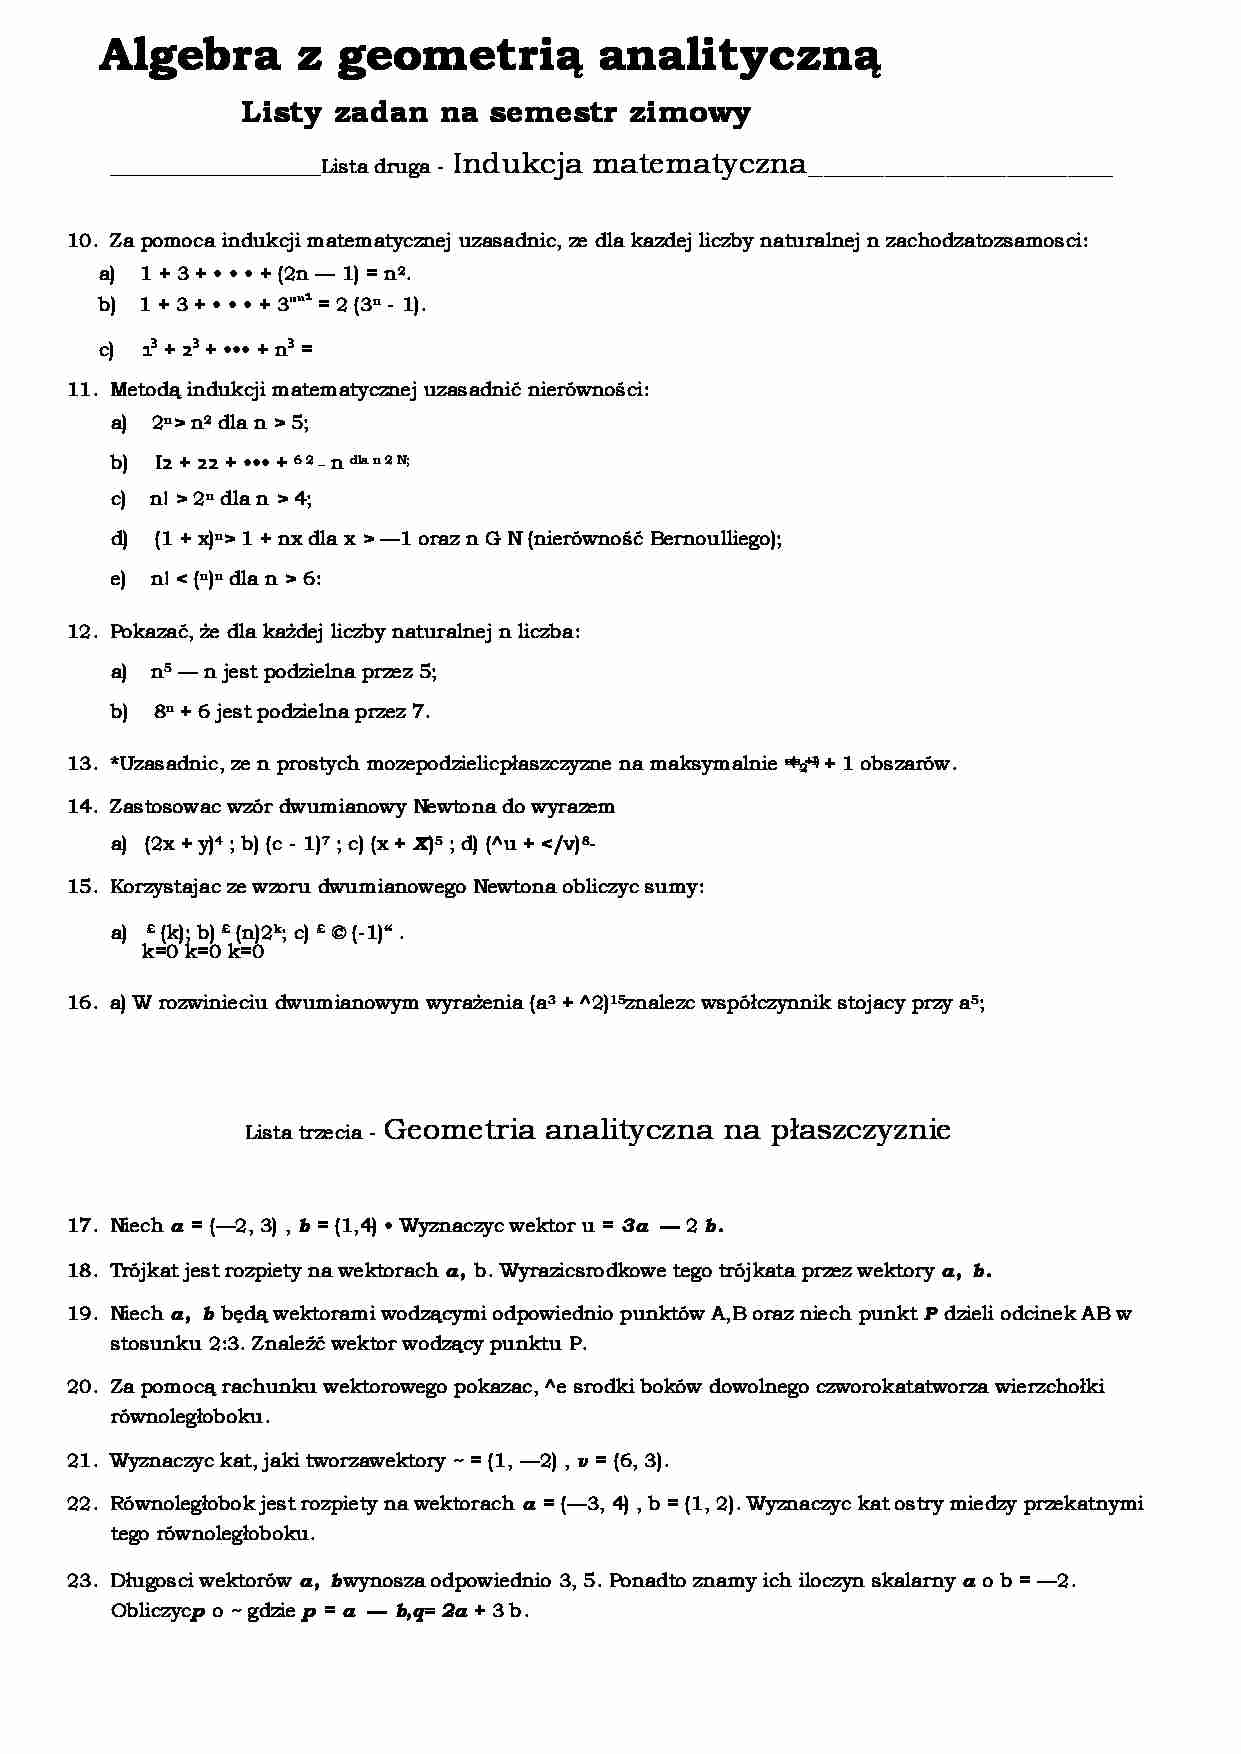 Indukcja matematyczna i geometria analityczna-opracowanie - strona 1